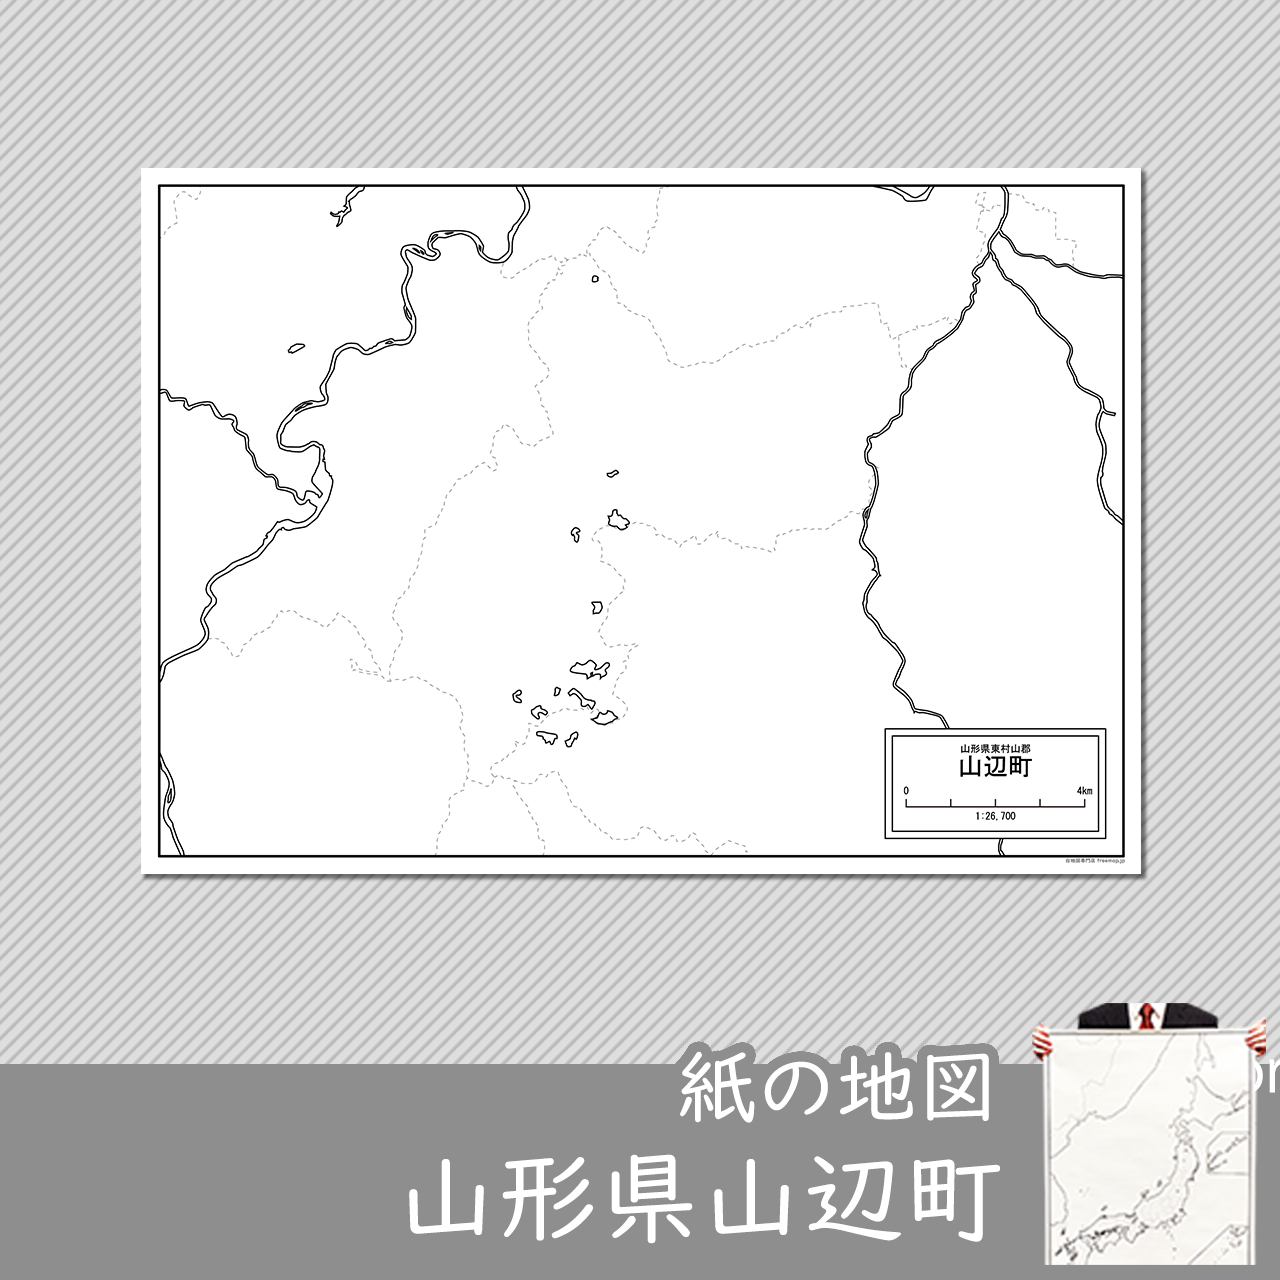 山辺町の紙の白地図のサムネイル